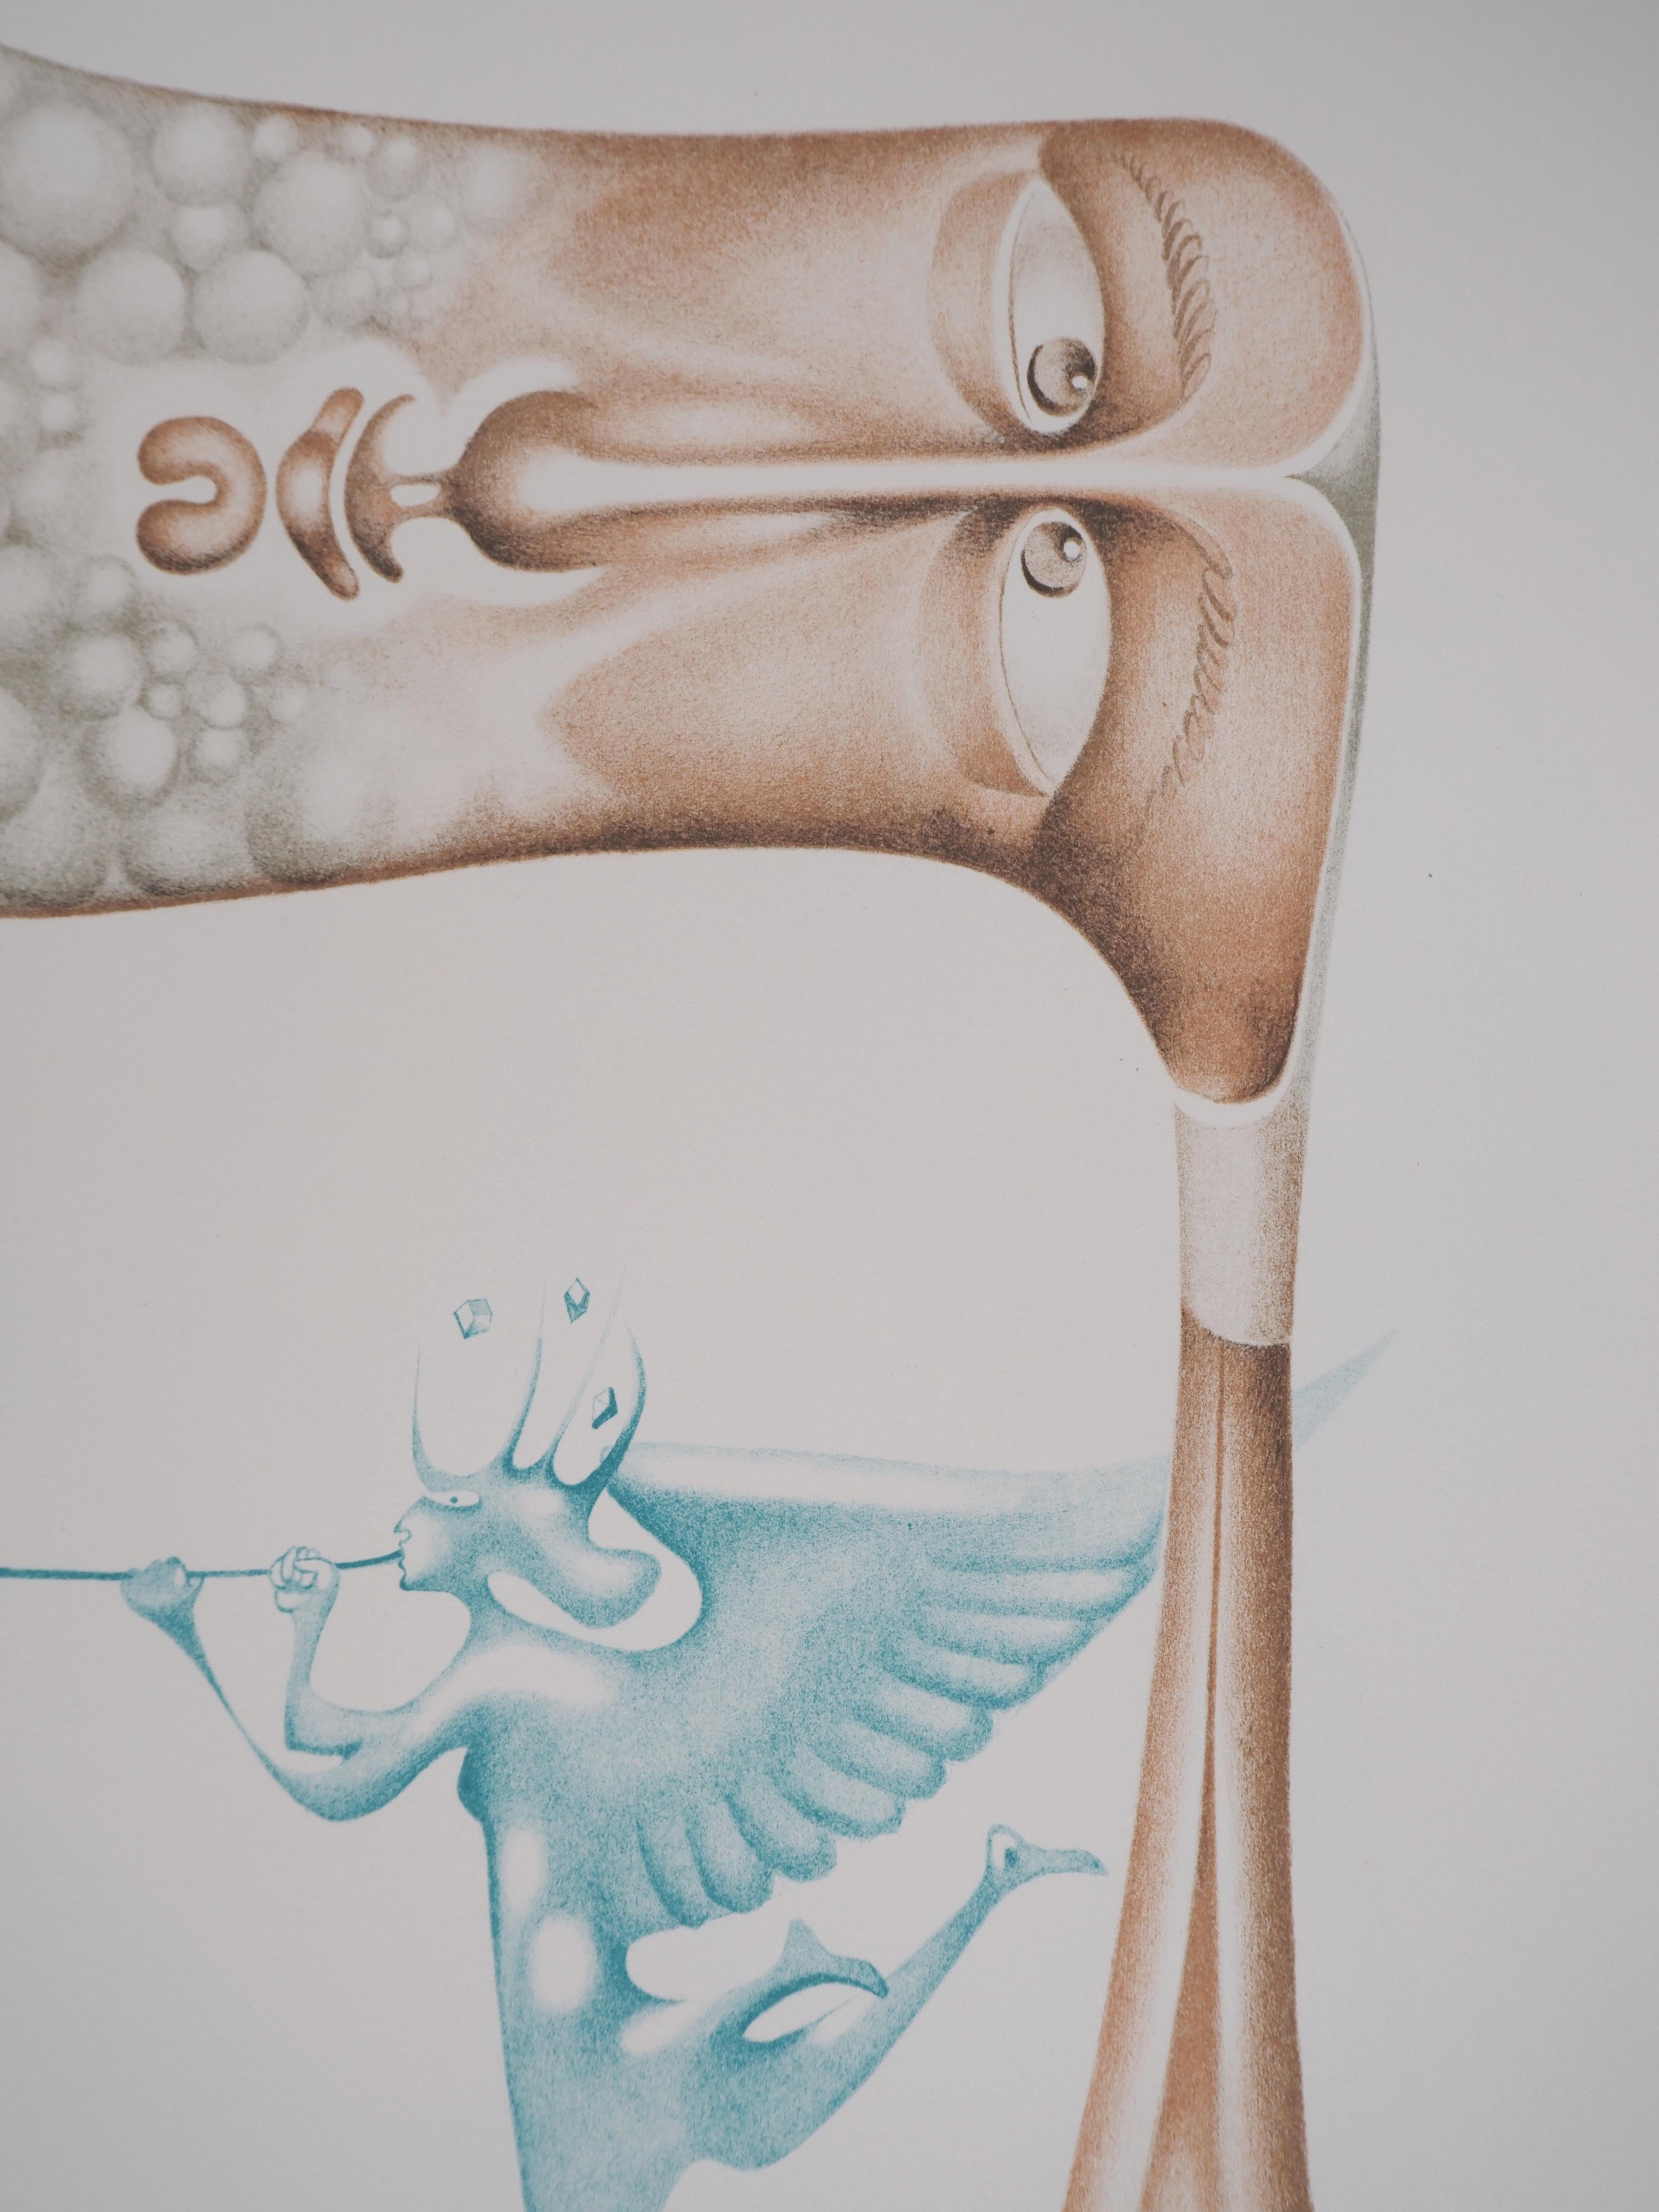 Écoutez les trompettes célestes - Lithographie originale, signée - Gris Figurative Print par Jules PERAHIM